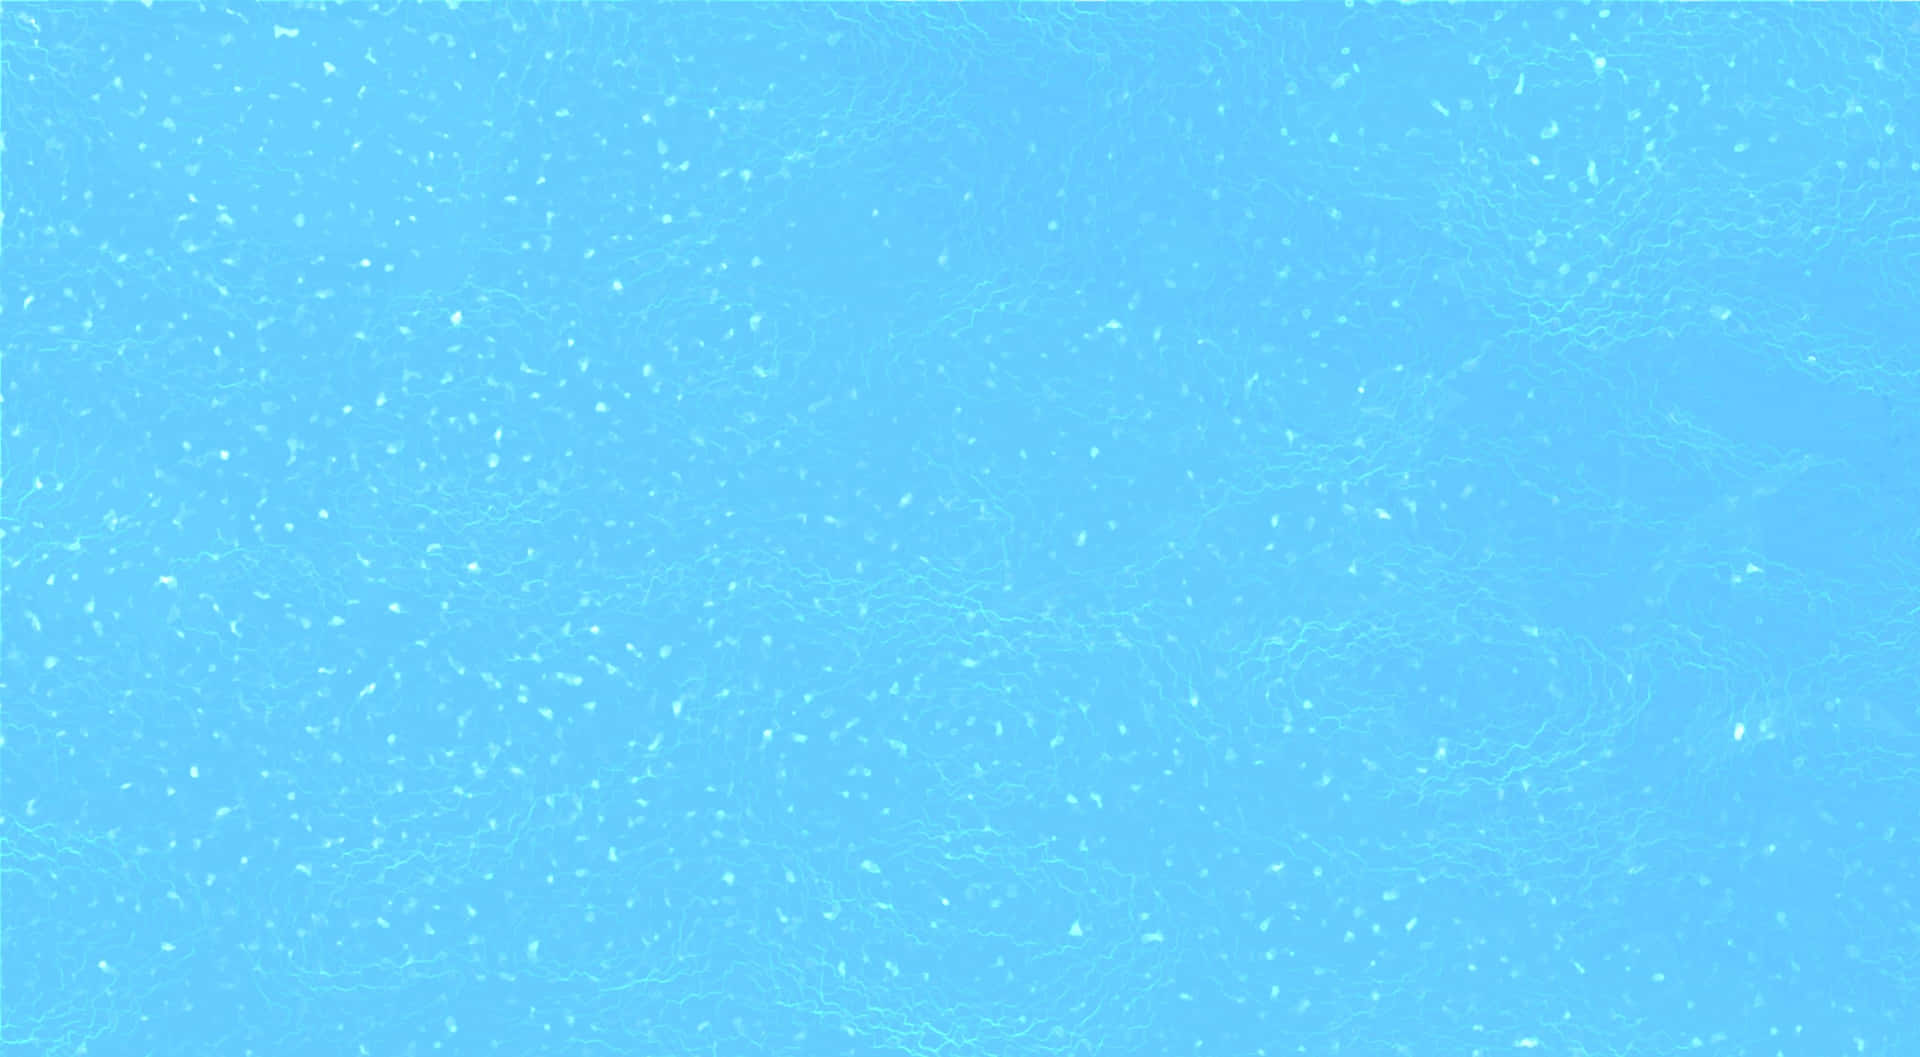 Unalaptop De Color Azul Claro Sobre Una Superficie De Escritorio Limpia Y Blanca. Fondo de pantalla